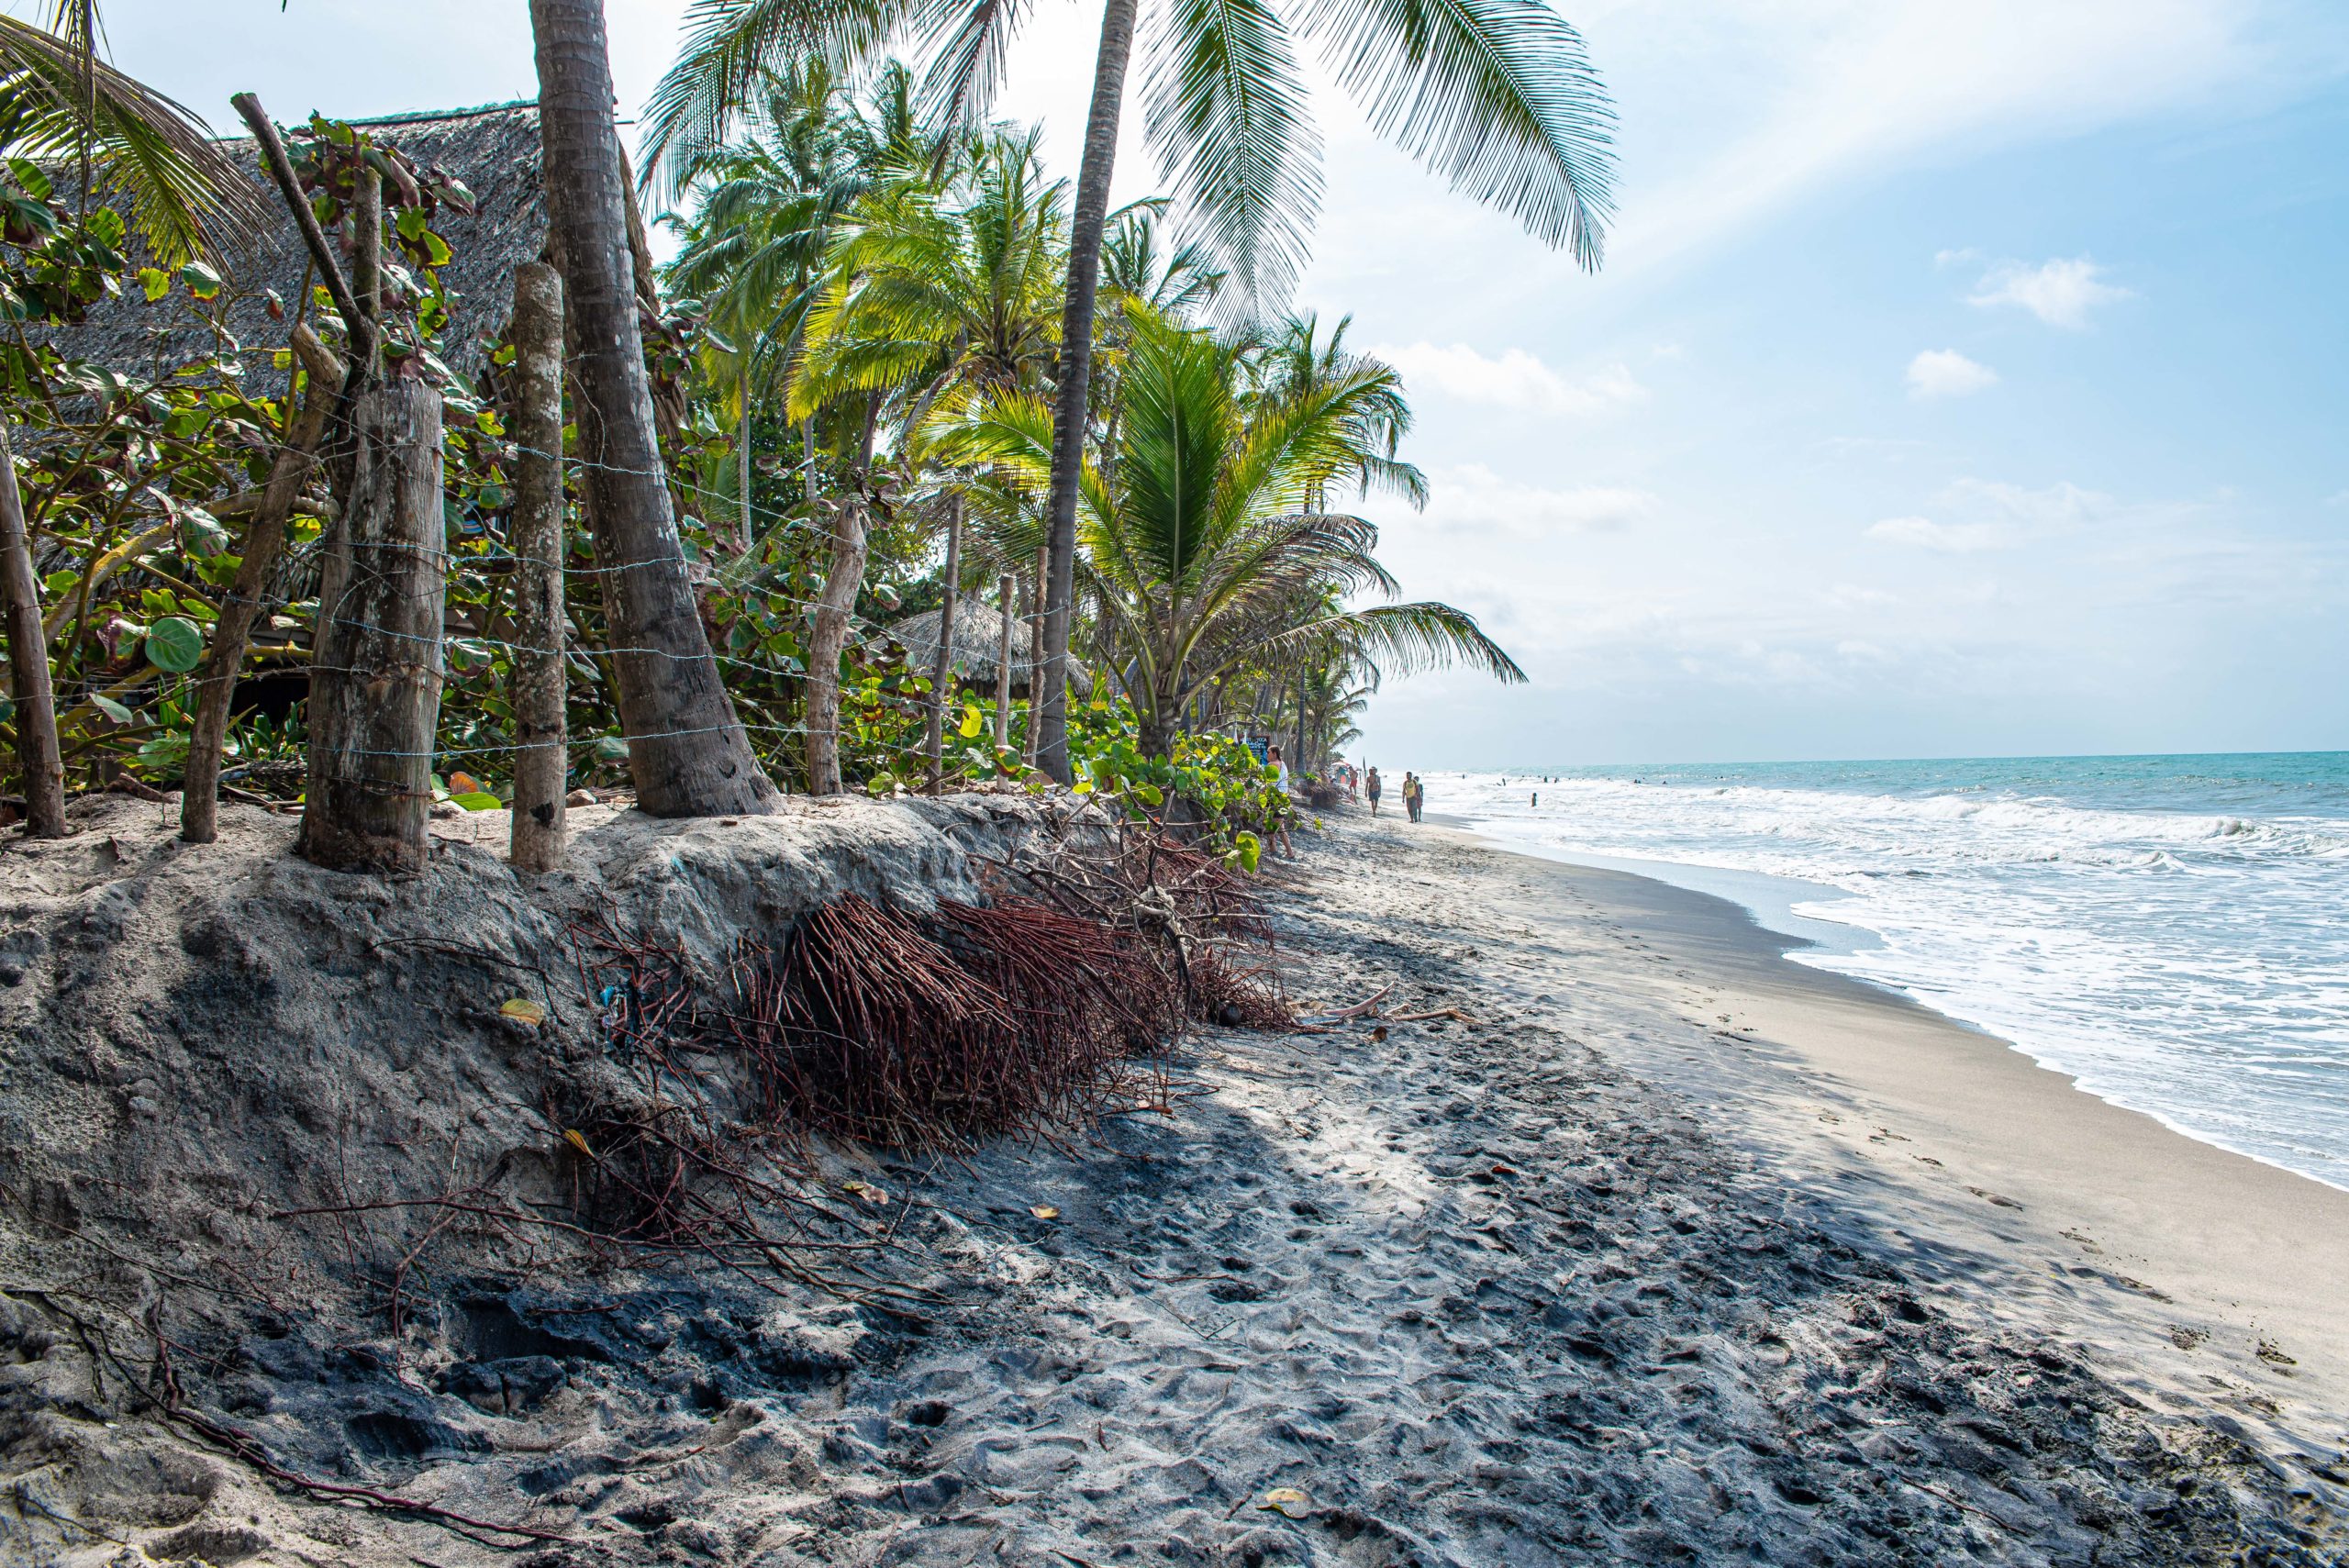 Disparition de la plage de Palomino trois semaines en colombie blog voyage